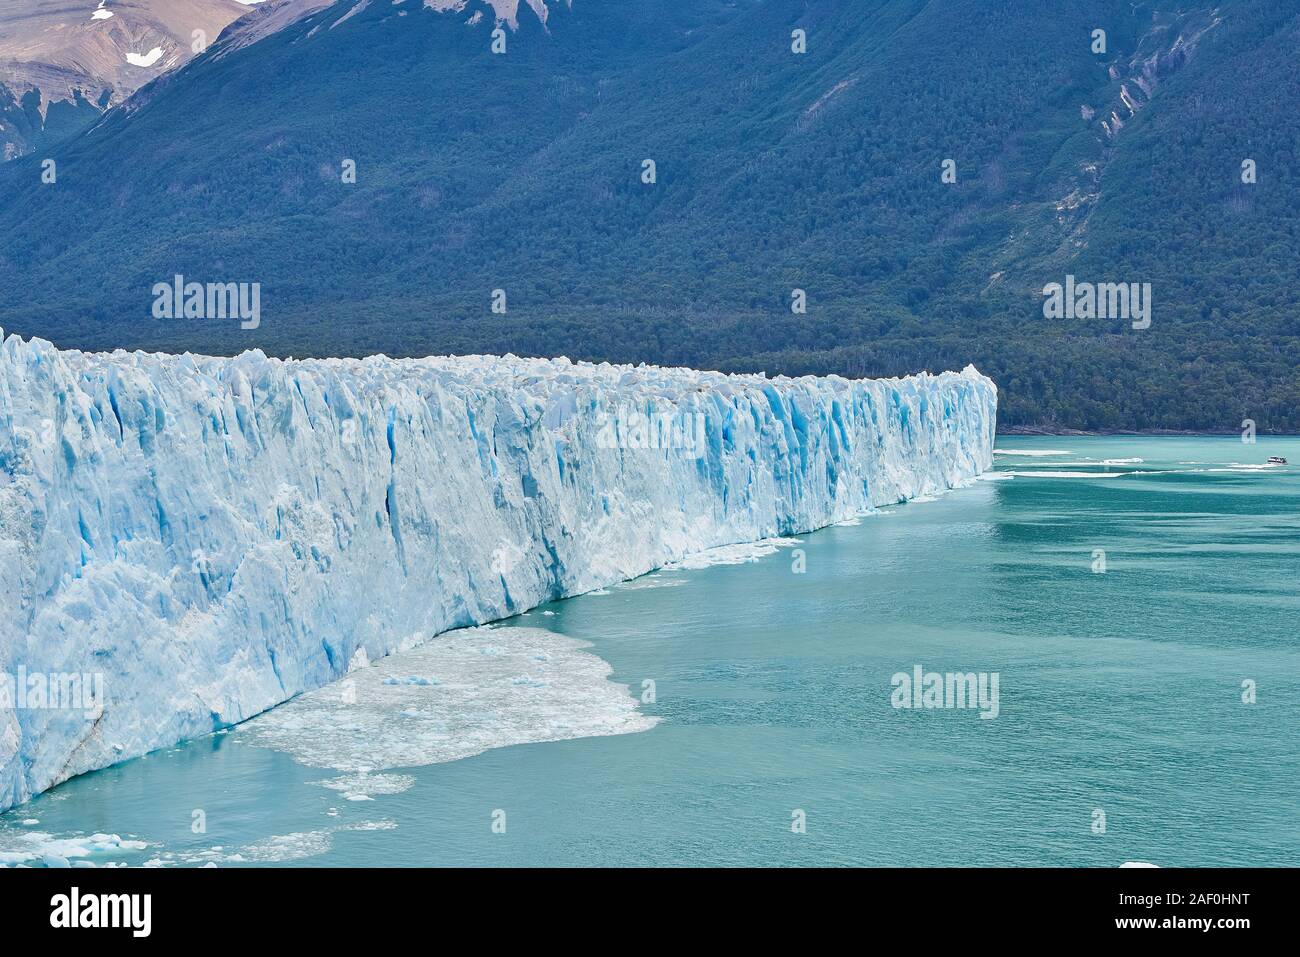 glacier perito moreno in patagonia argentina Stock Photo